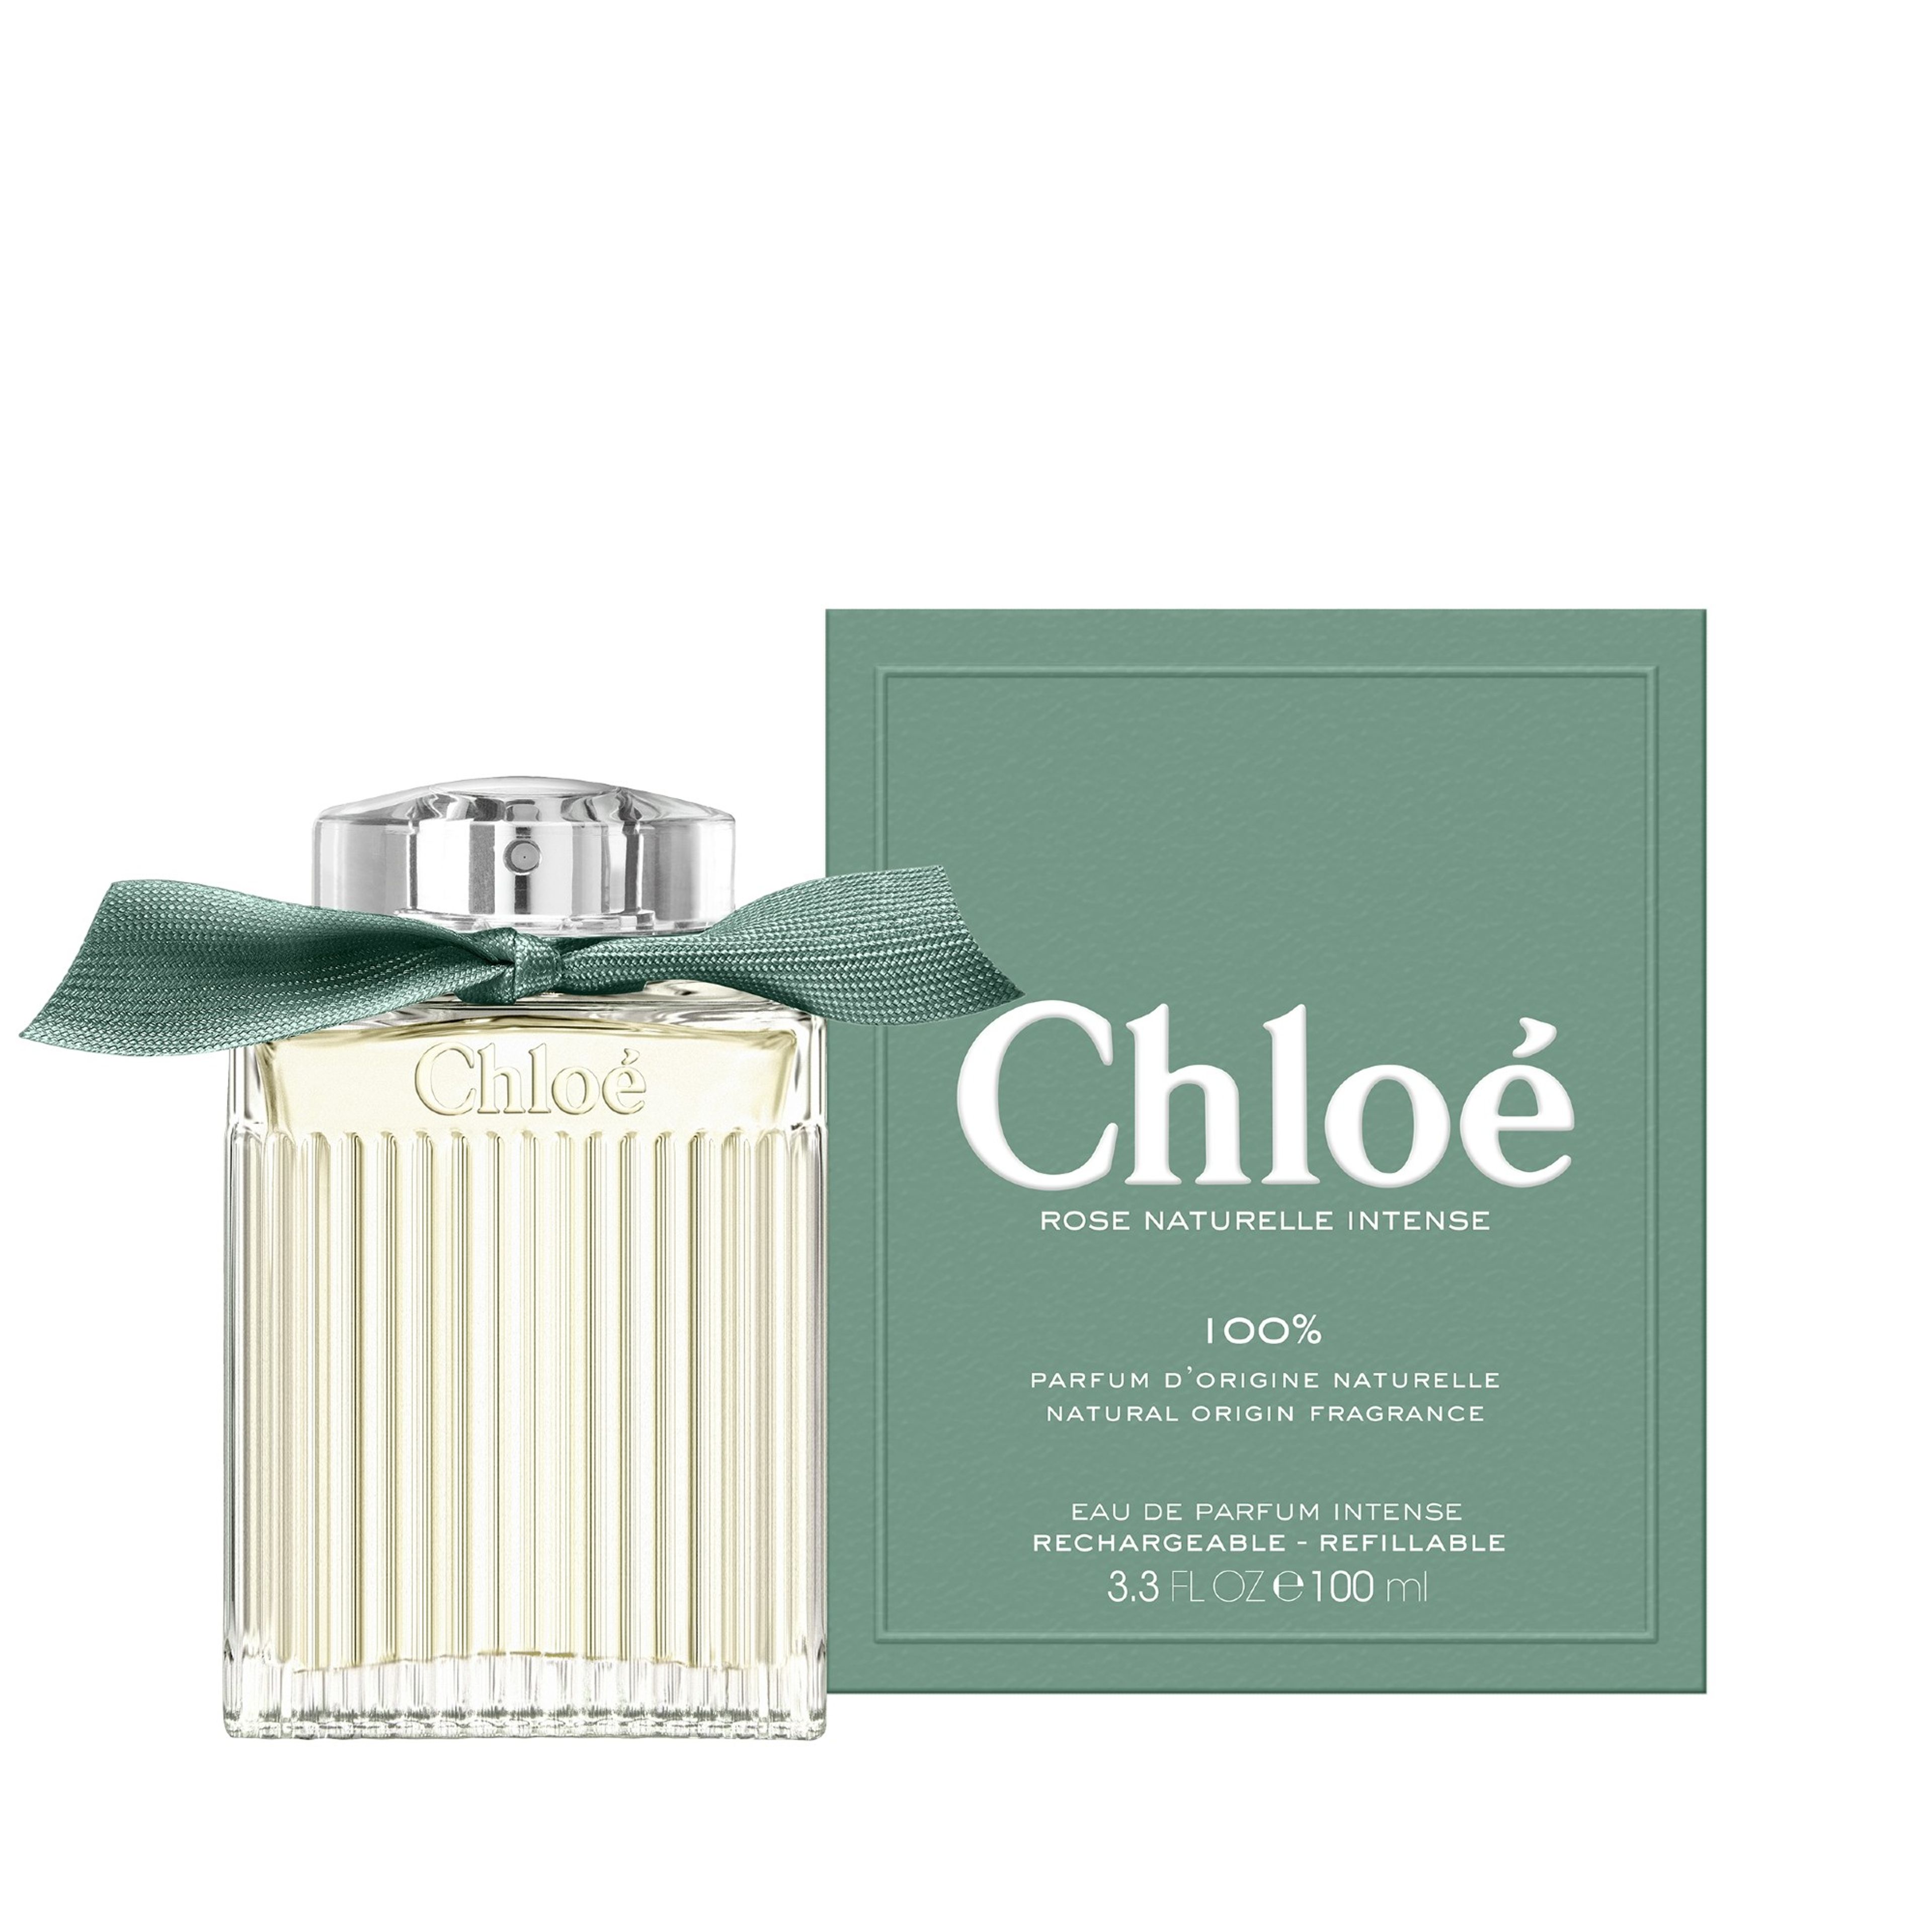 Chloé Chloé Eau De Parfum Intense Rose Naturelle Intense 100 ml 2